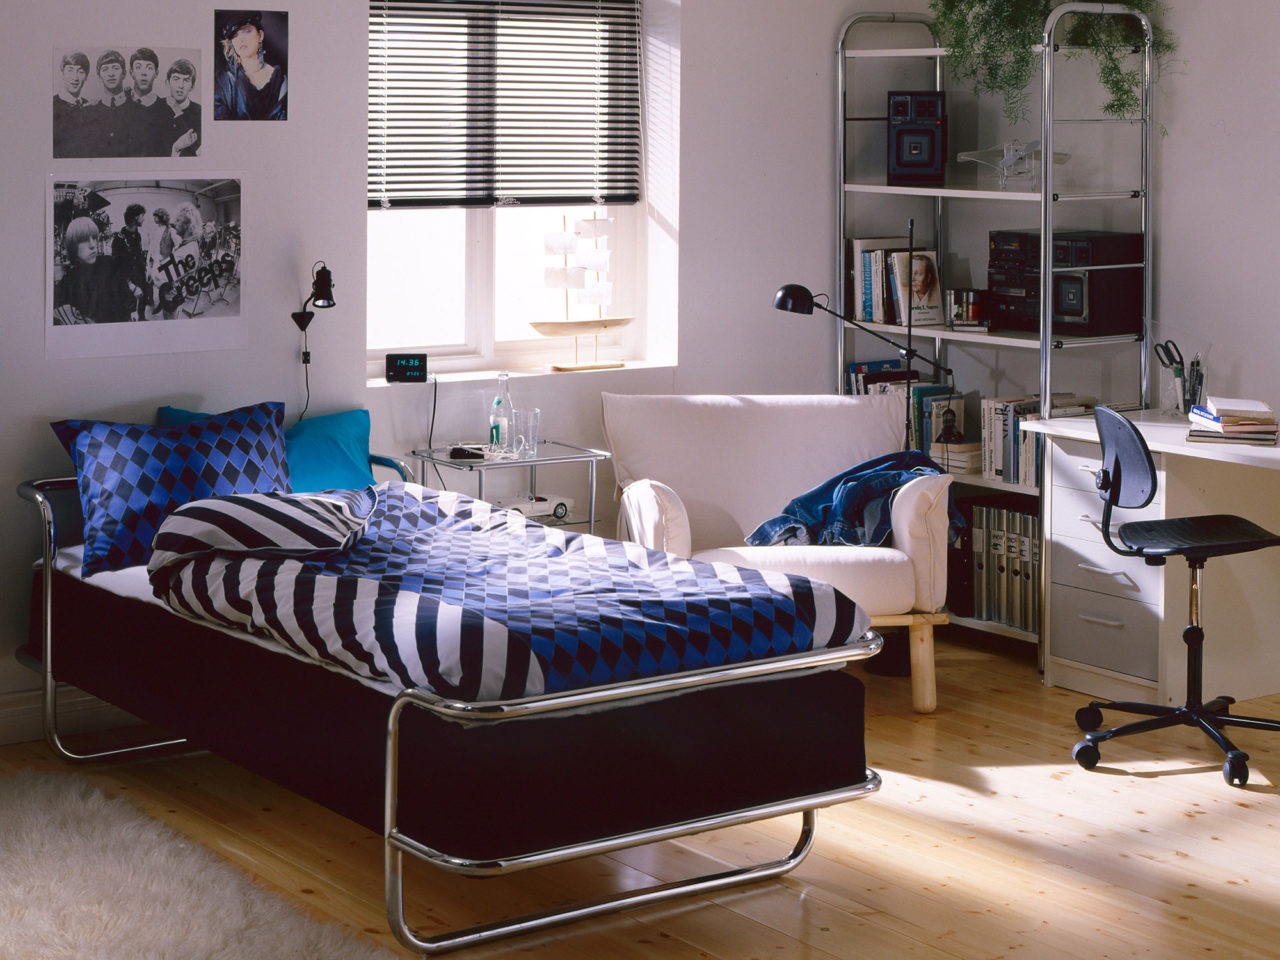 Jugendzimmer, vorwiegend weiß mit hellem Holzfußboden. KROMVIK Bett und Bücherregal mit verchromtem Metallrohrgestell.